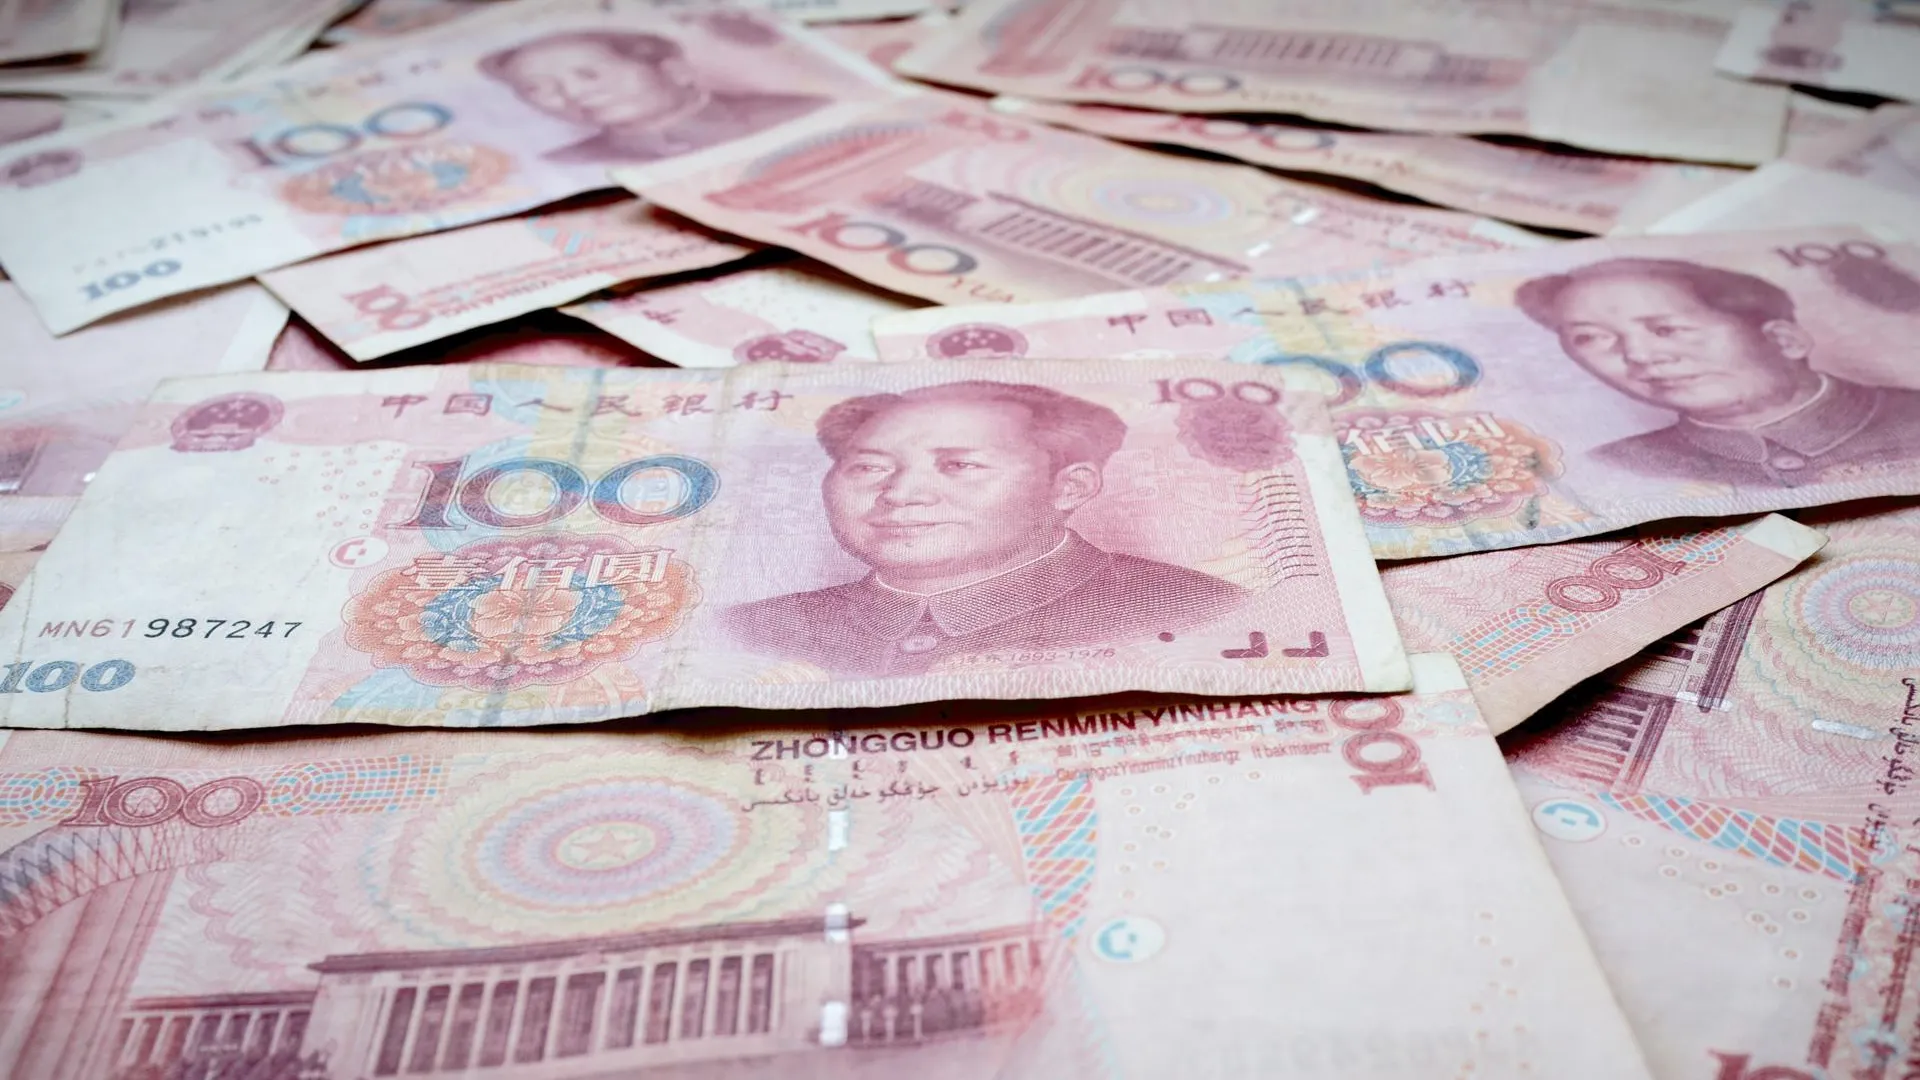 Экономист порекомендовал открыть вклад в юанях для защиты от ослабления рубля